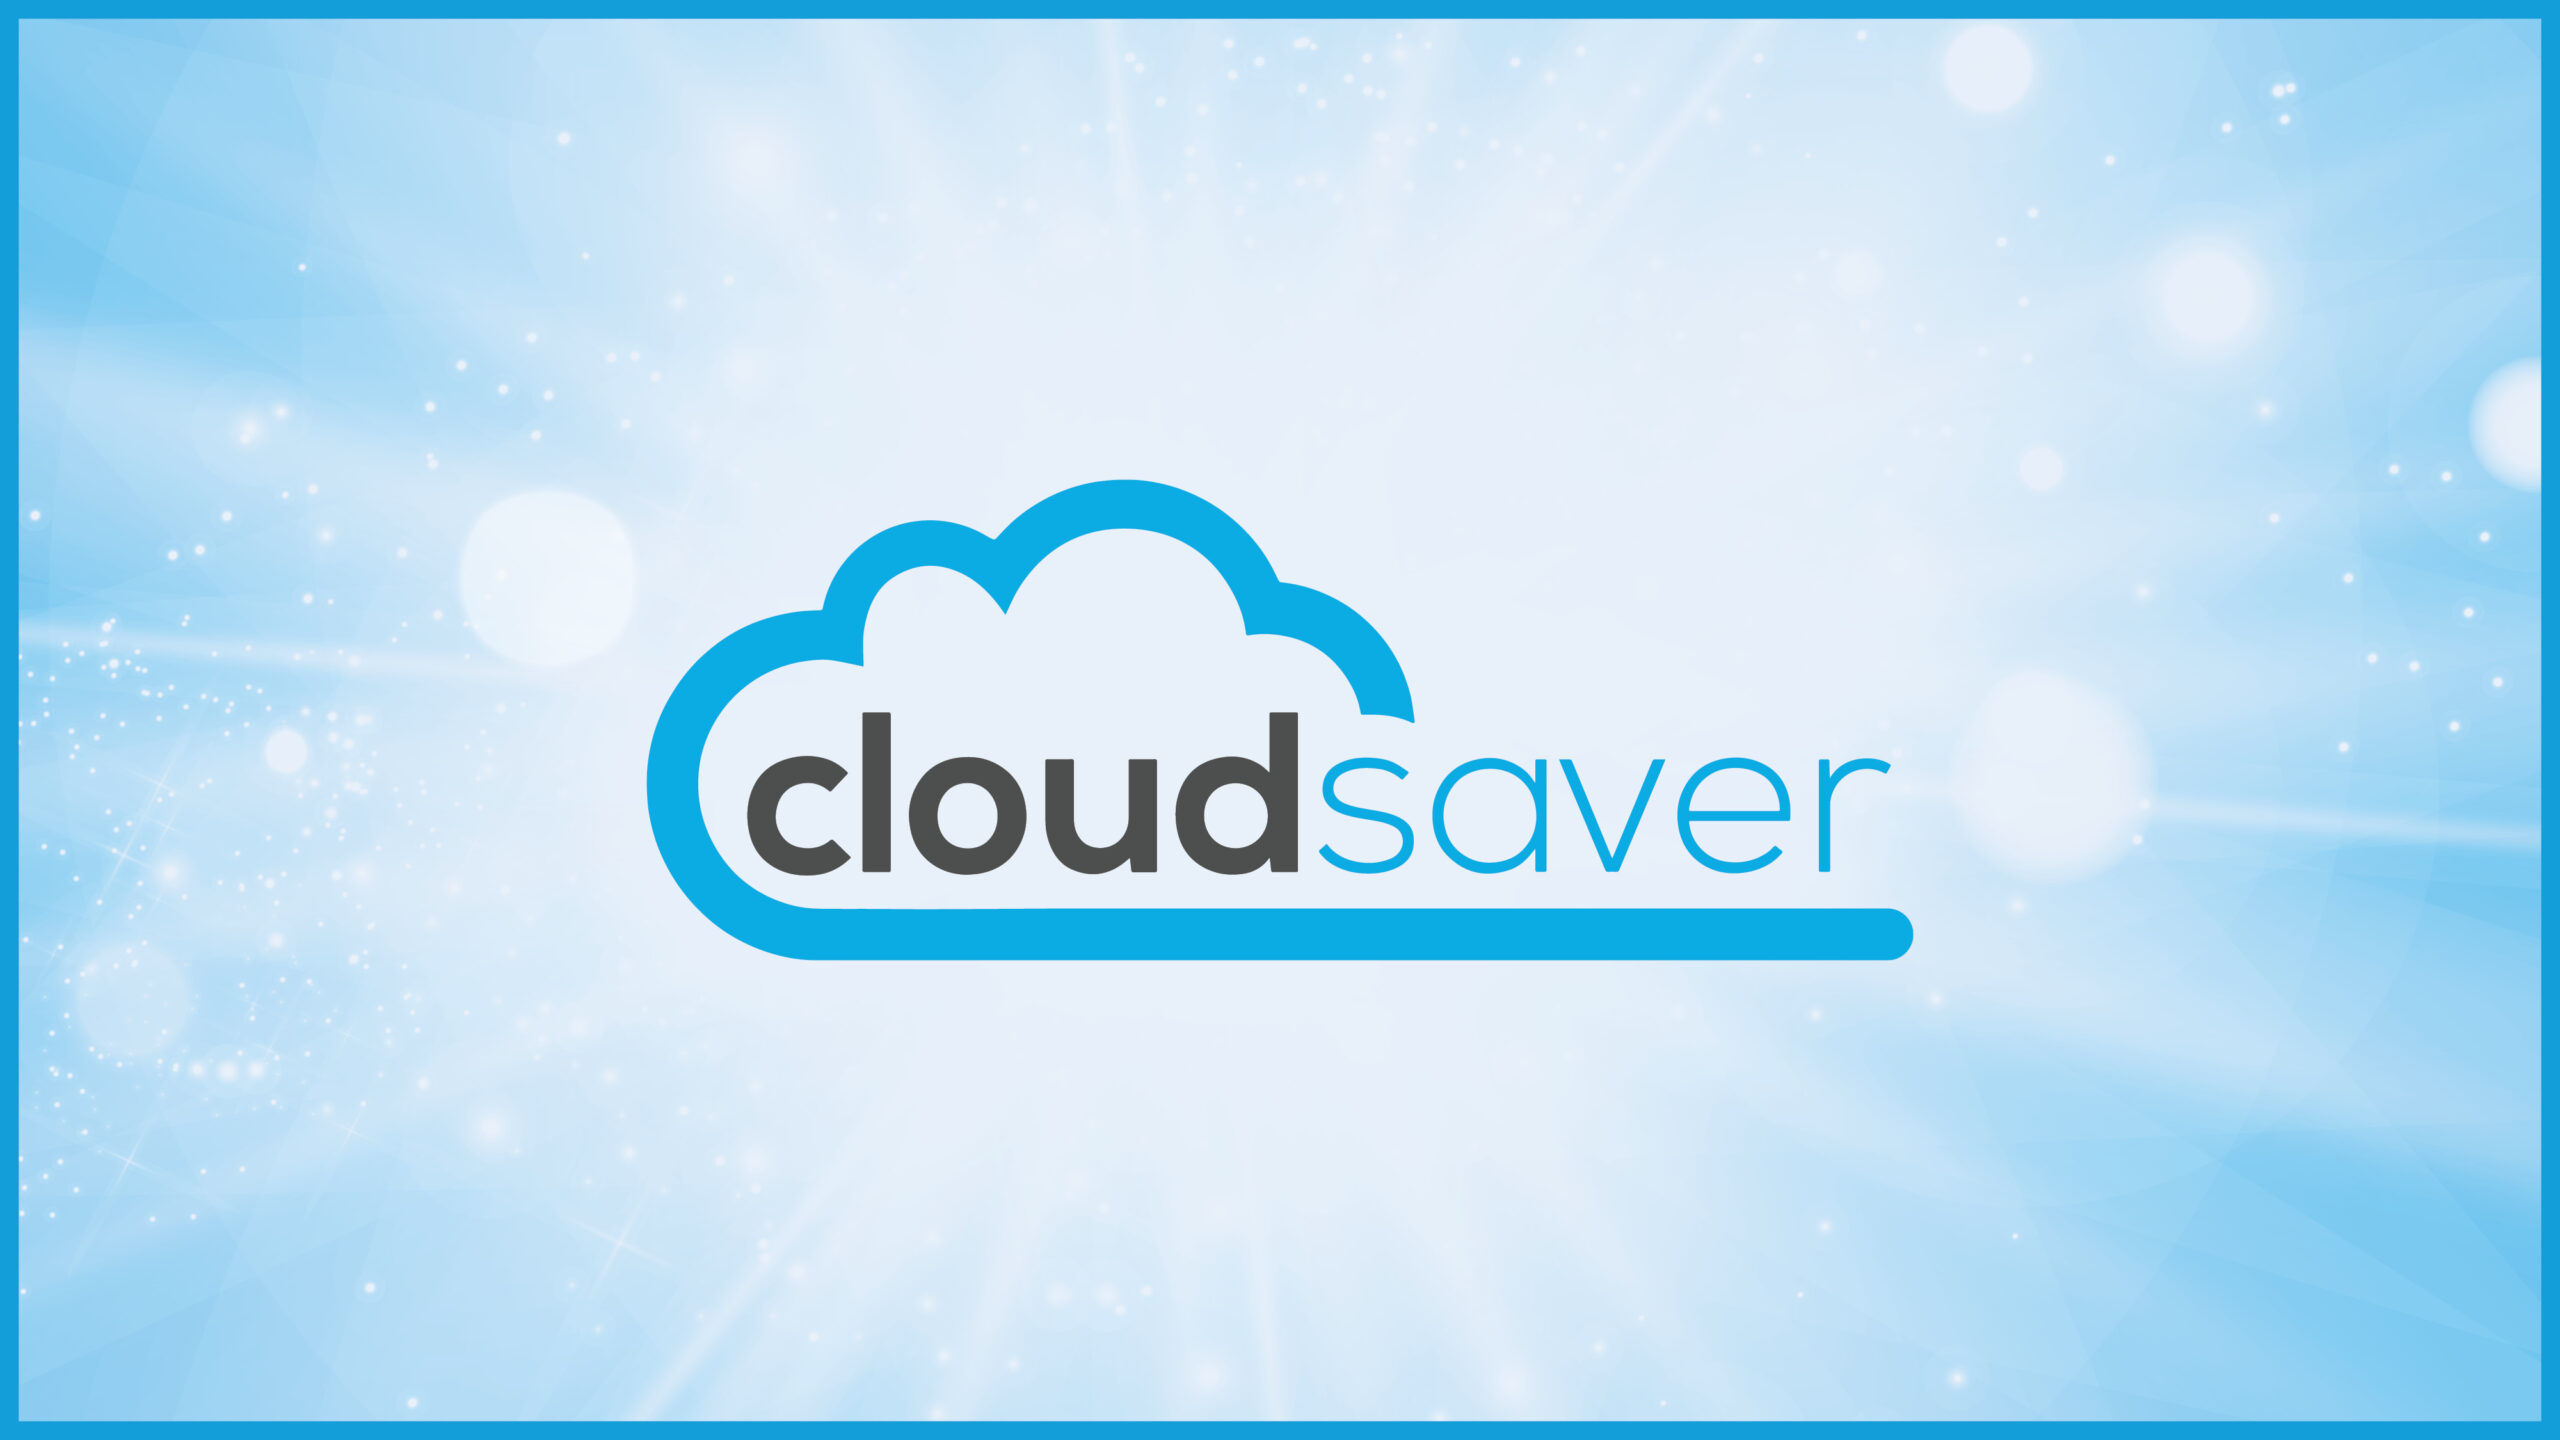 CloudSaver Origin Story